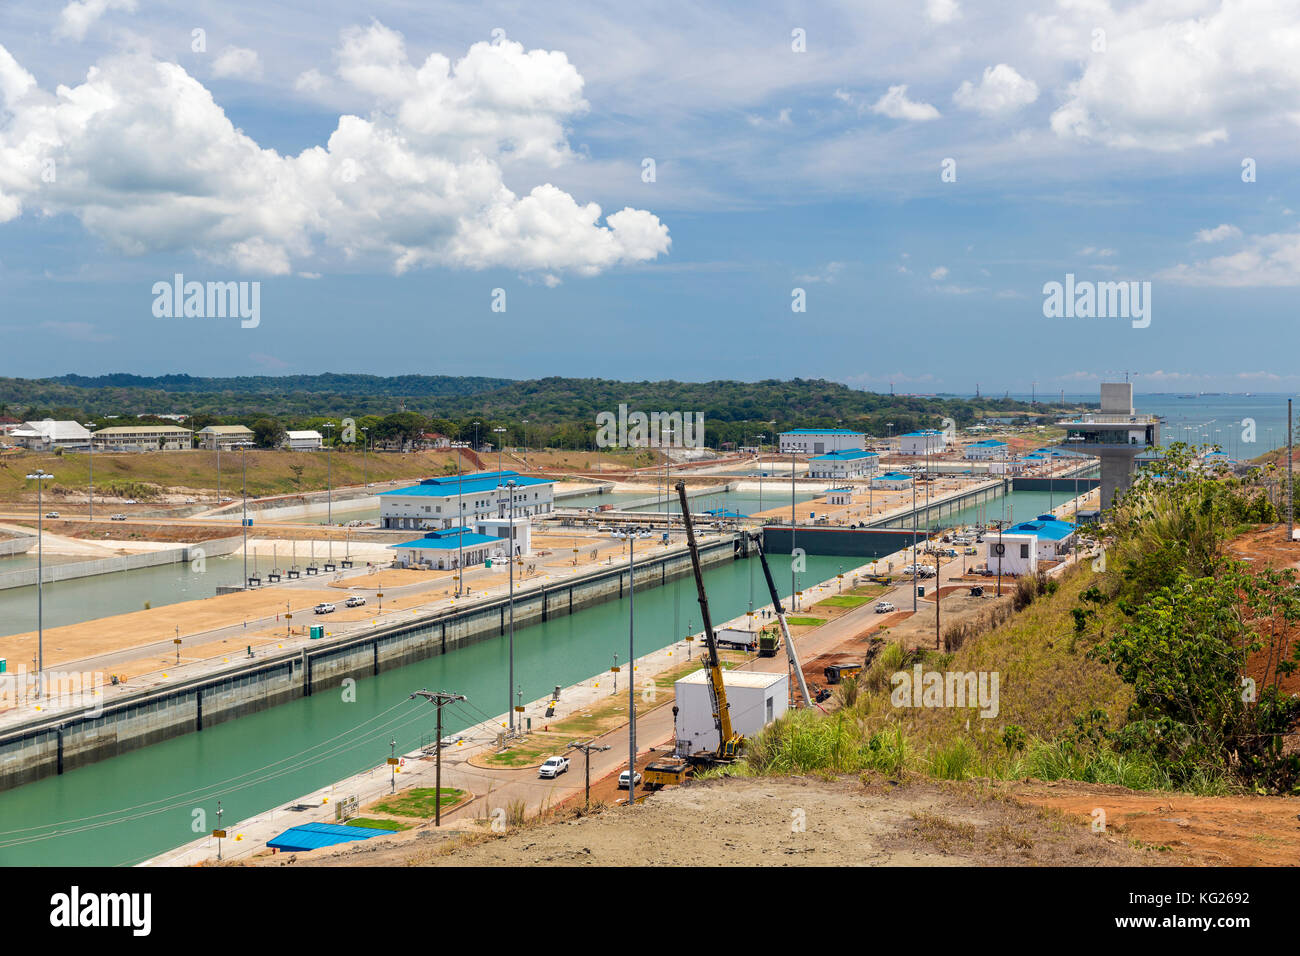 La nouvelle extension du canal de Panama du côté Atlantique à Colon, Panama, Amérique centrale Banque D'Images